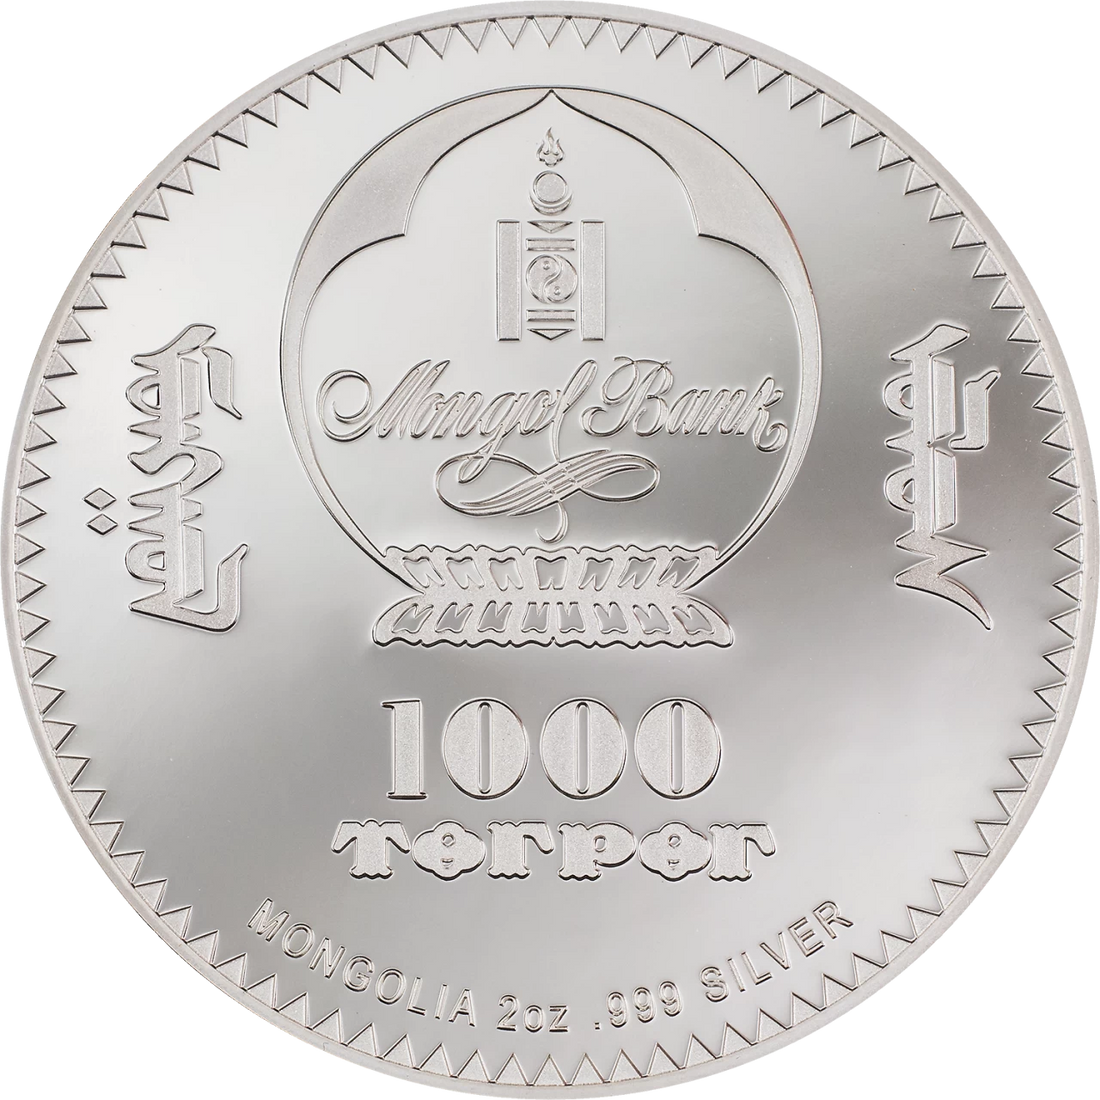 2022 Mongolia LION - INTO THE WILD 2 oz Silver Coin - OZB